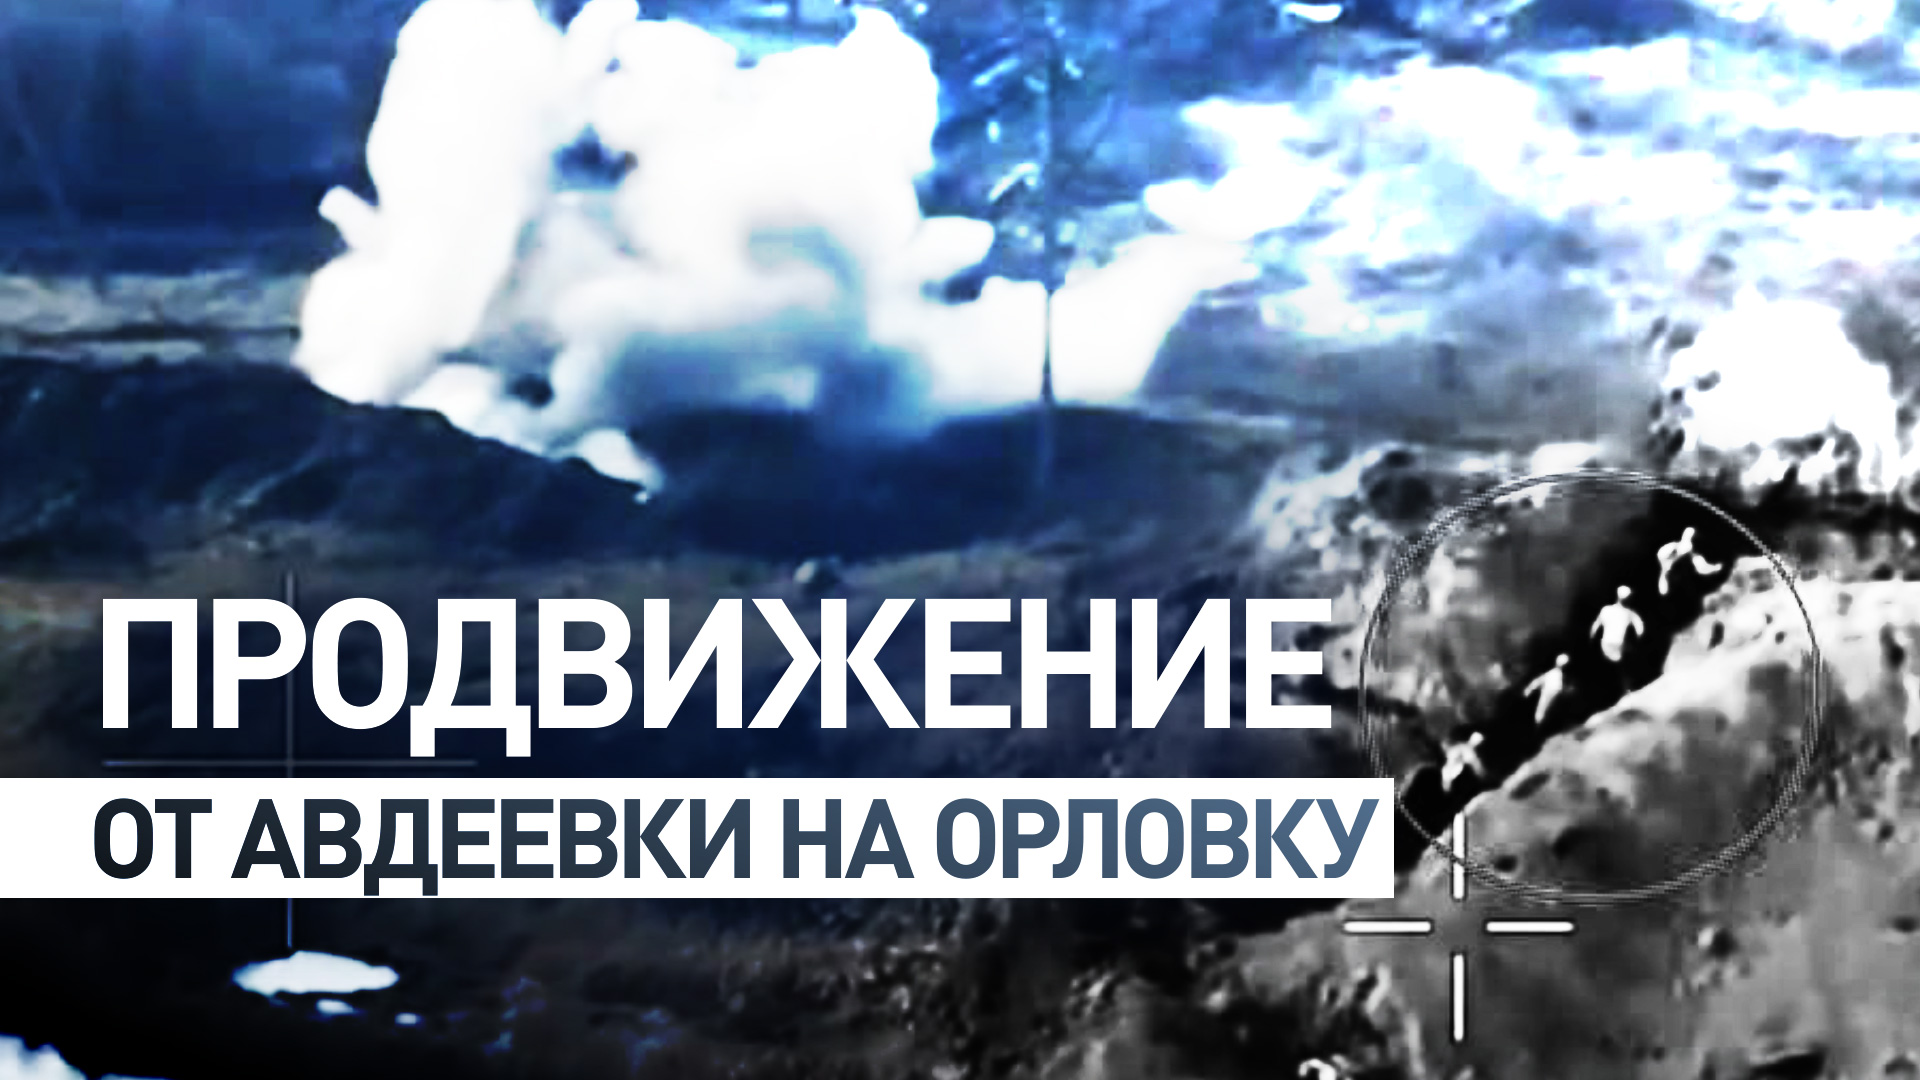 Кадры наступления российских военных от авдеевского коксохима на Орловку